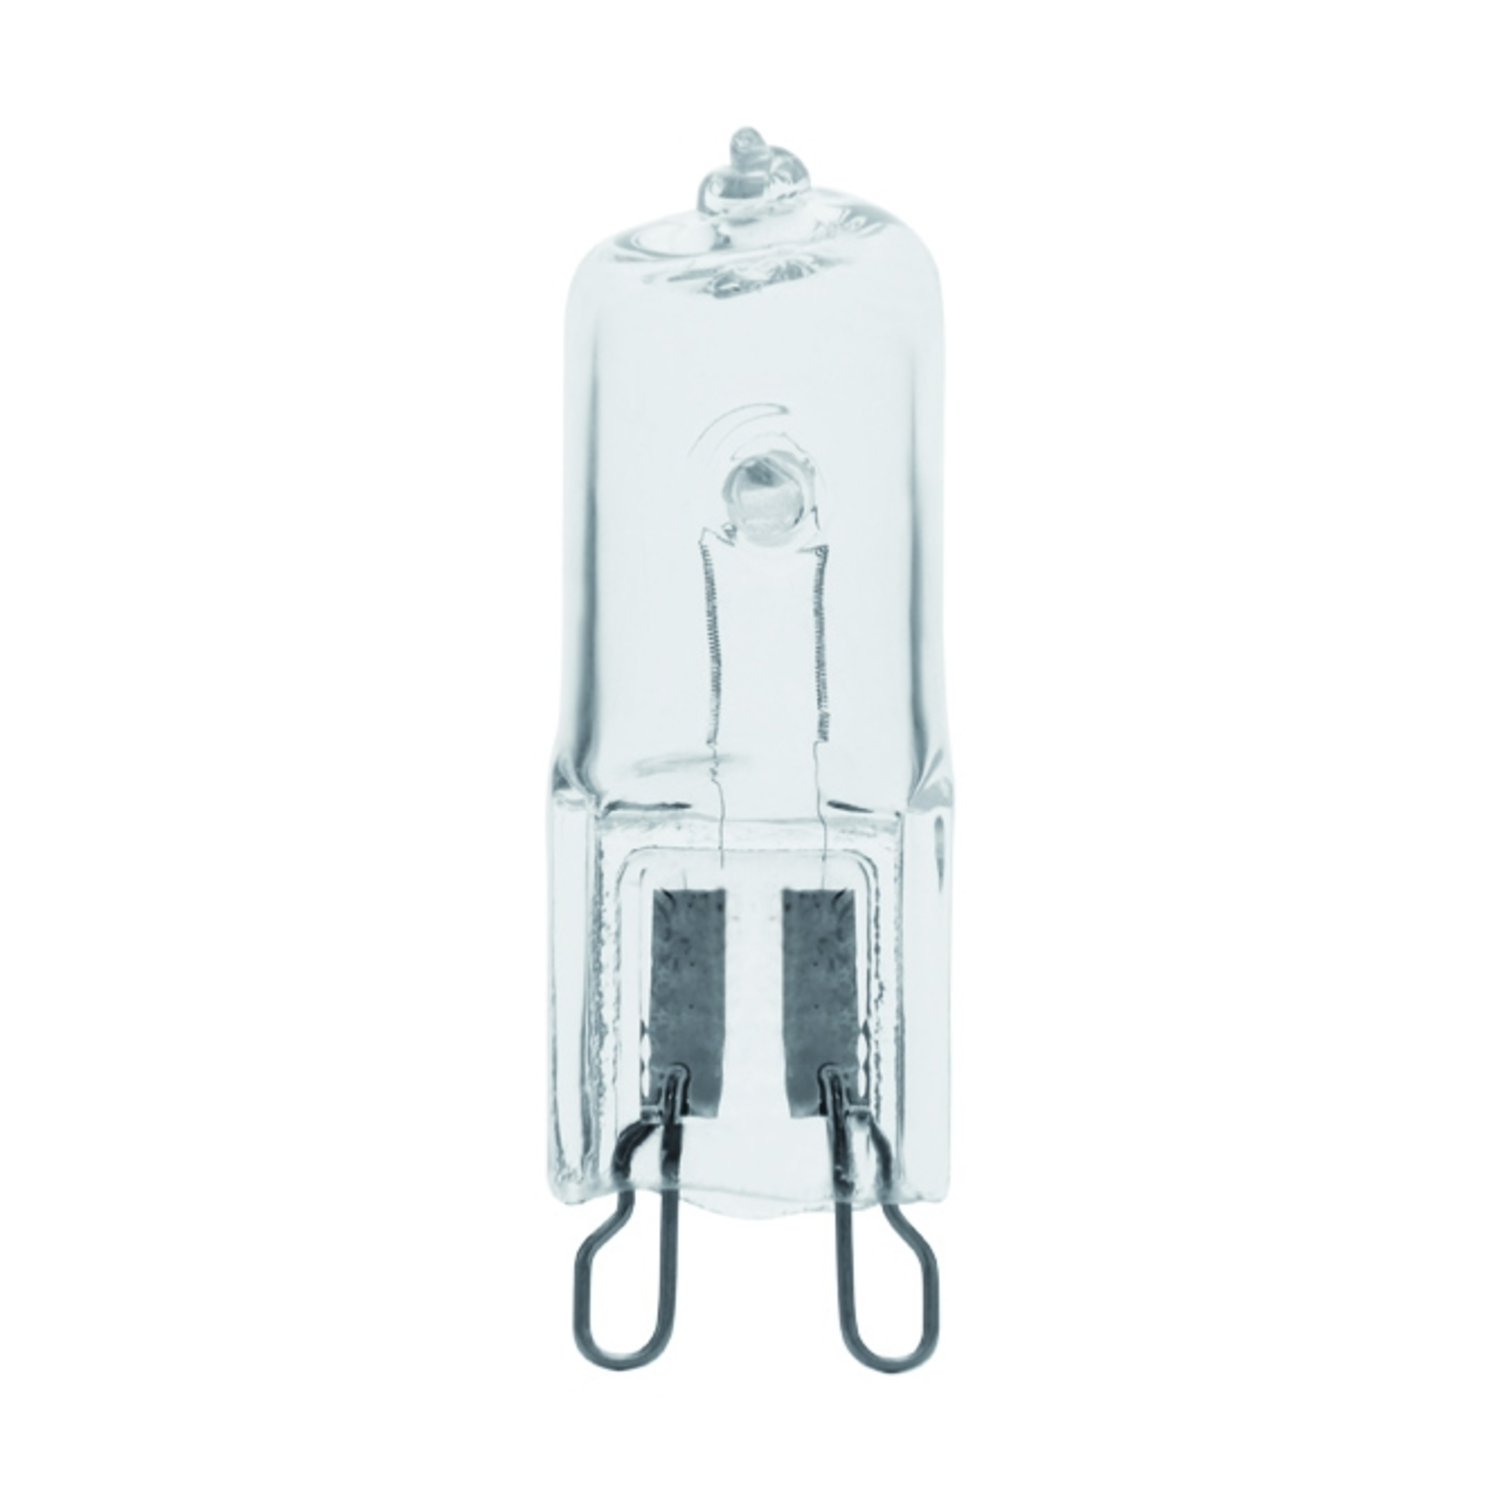 immagine del prodotto lampadina alogena eco star trasparente G9 CE bianco caldo 220-240 volt 20 watt 2000 ore 1 pezzo kan 18420